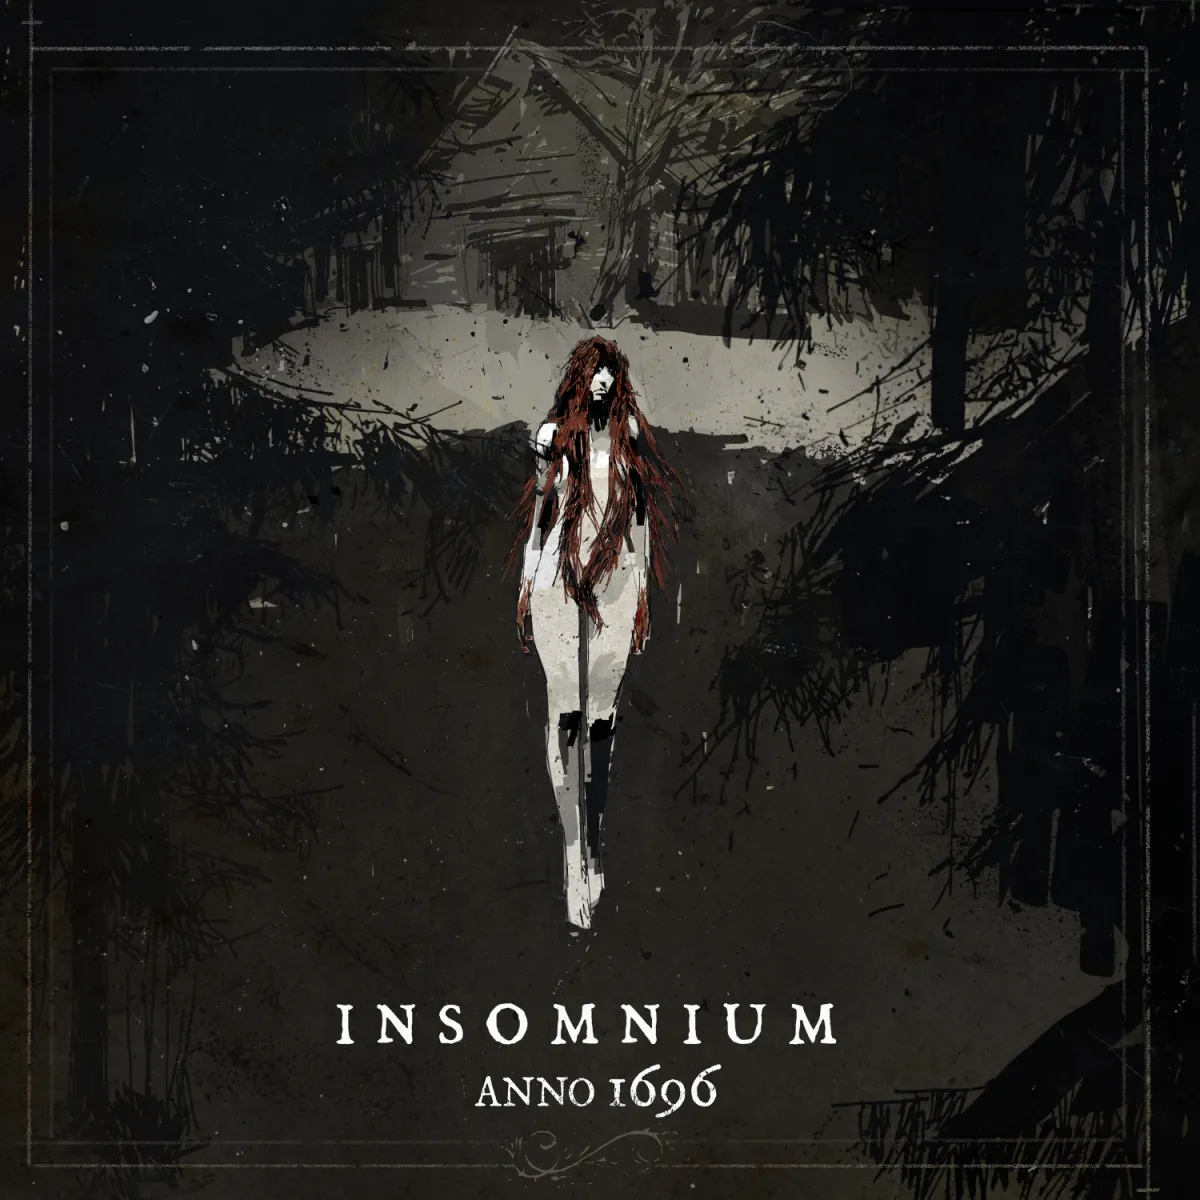 Artwork for the album ‘Anno 1696’ by Insomnium